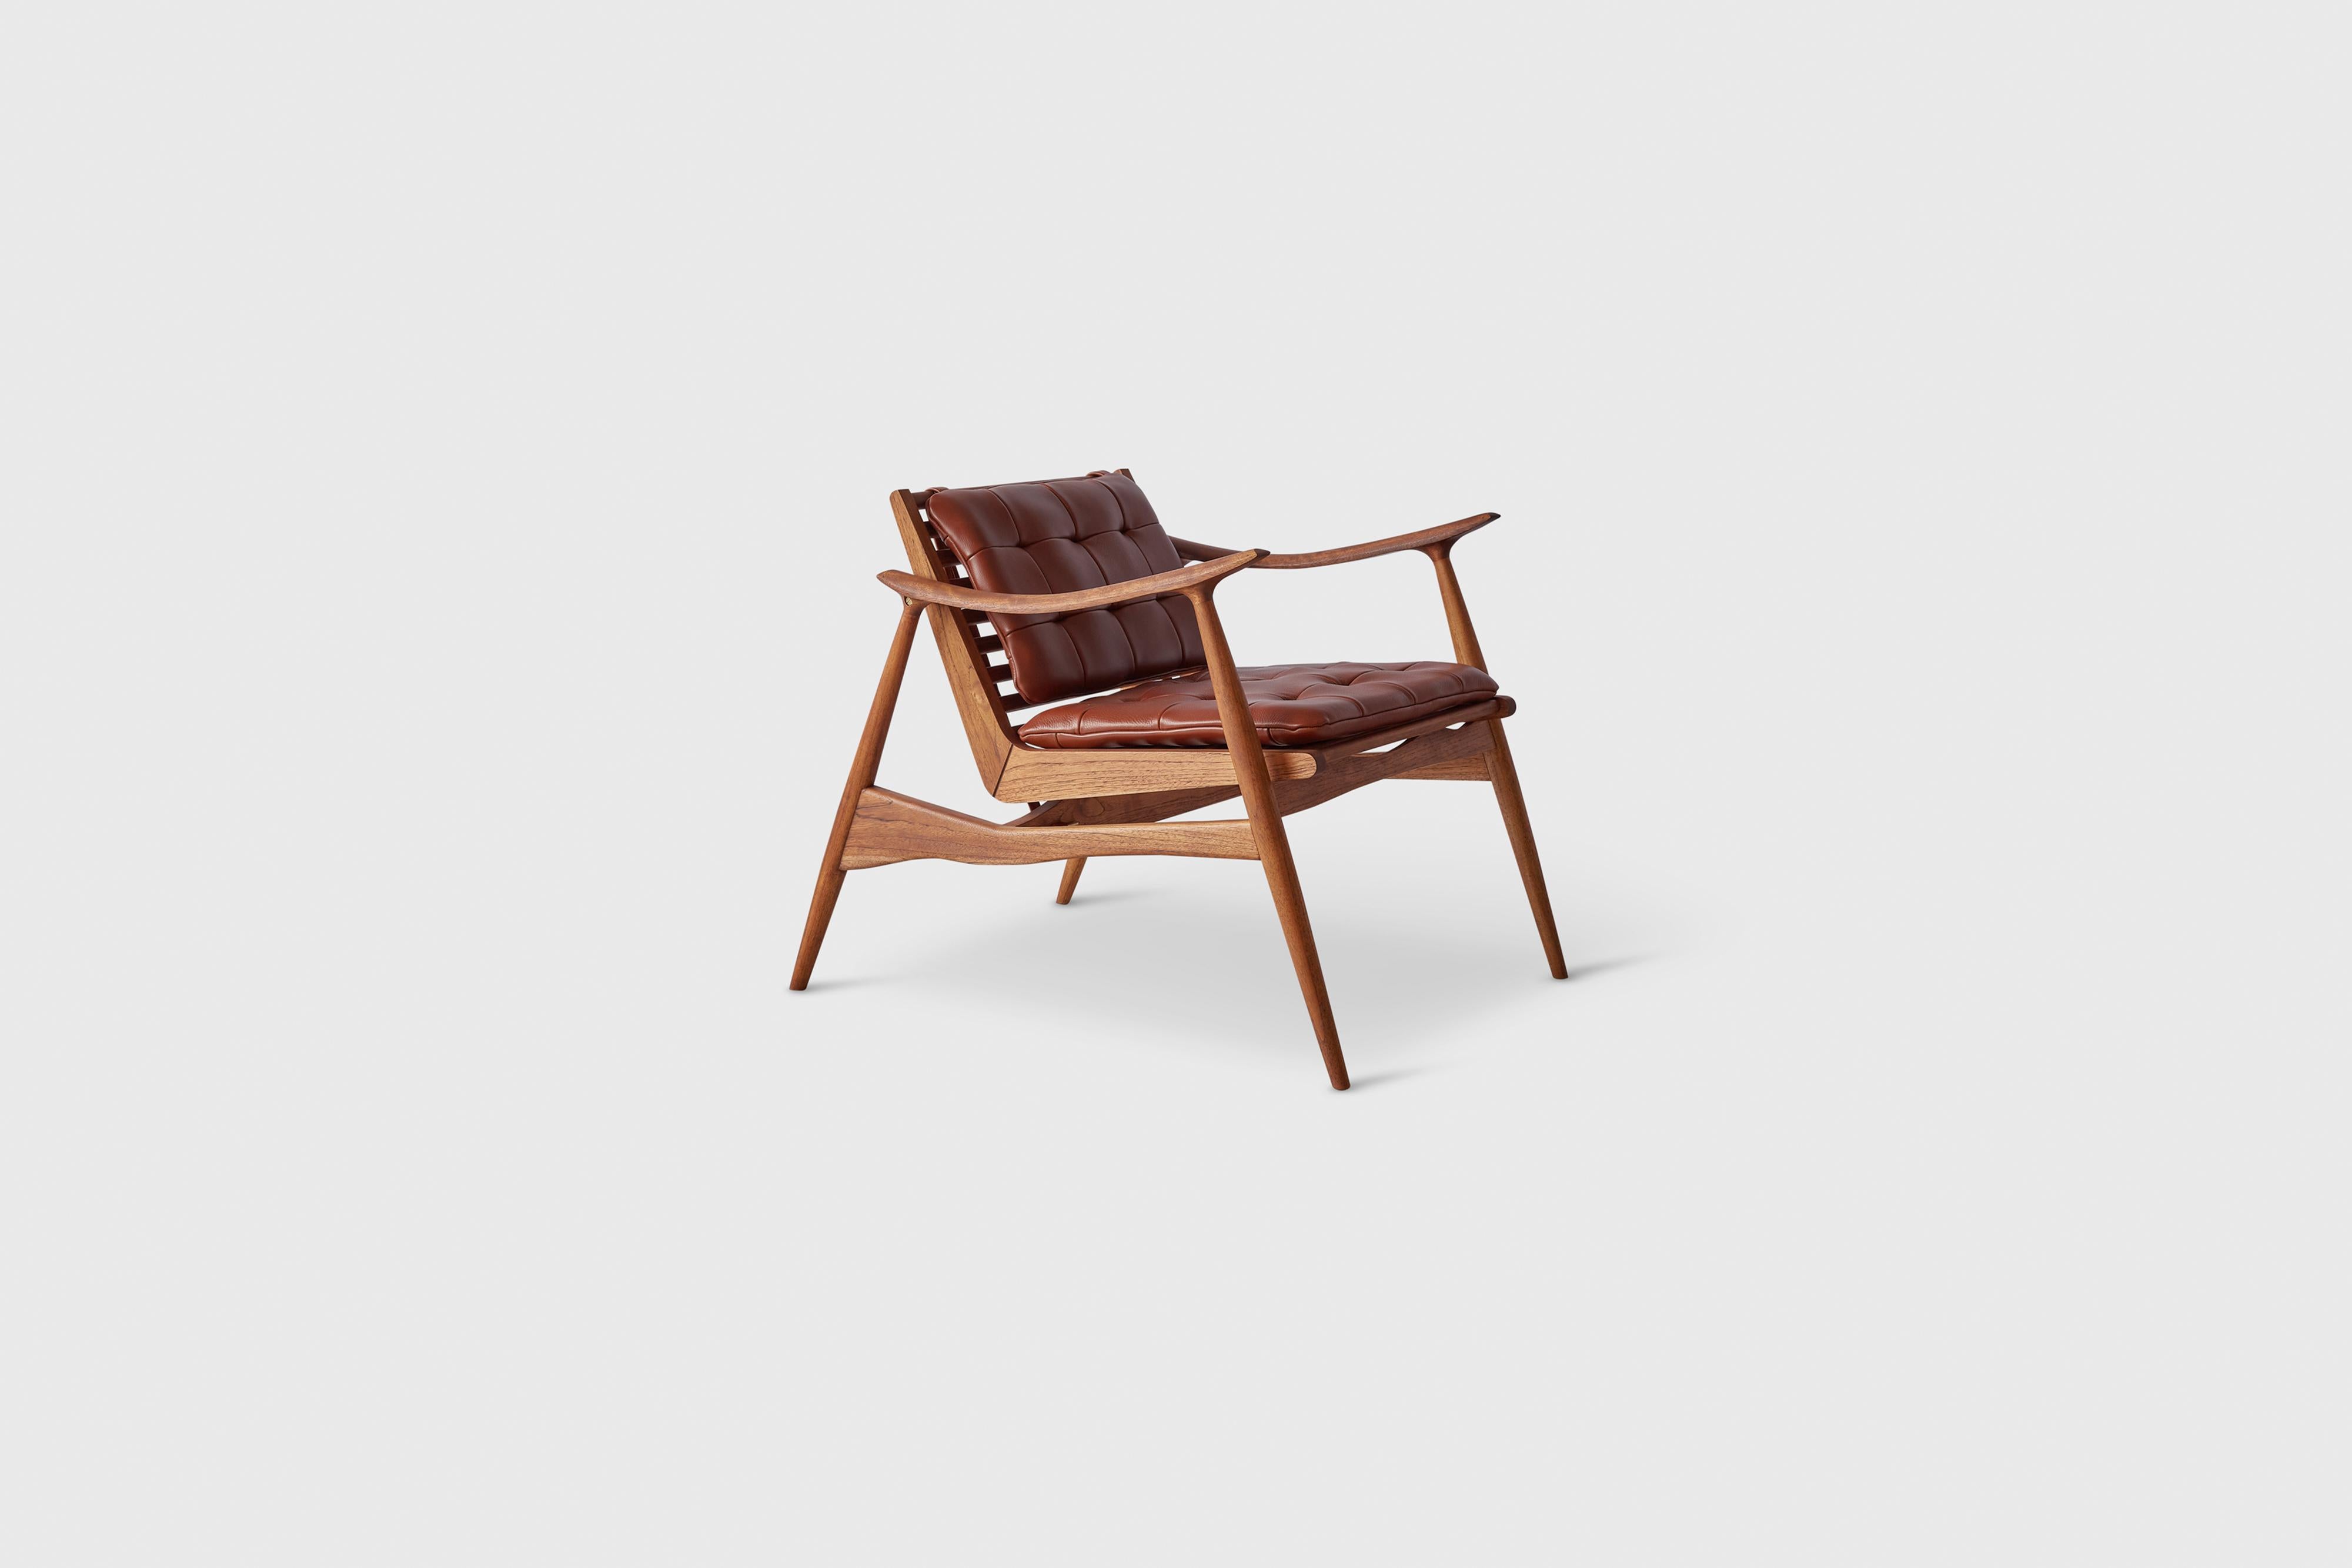 Brauner Sessel Atra von Atra Design
Abmessungen: T 92 x B 66 x H 73 cm
MATERIALIEN: Leder, Mahagoni, Nussbaum
Erhältlich in anderen Farben.

Atra Design
Wir sind Atra, eine Möbelmarke, die von Atra form A, einer in Mexiko-Stadt ansässigen